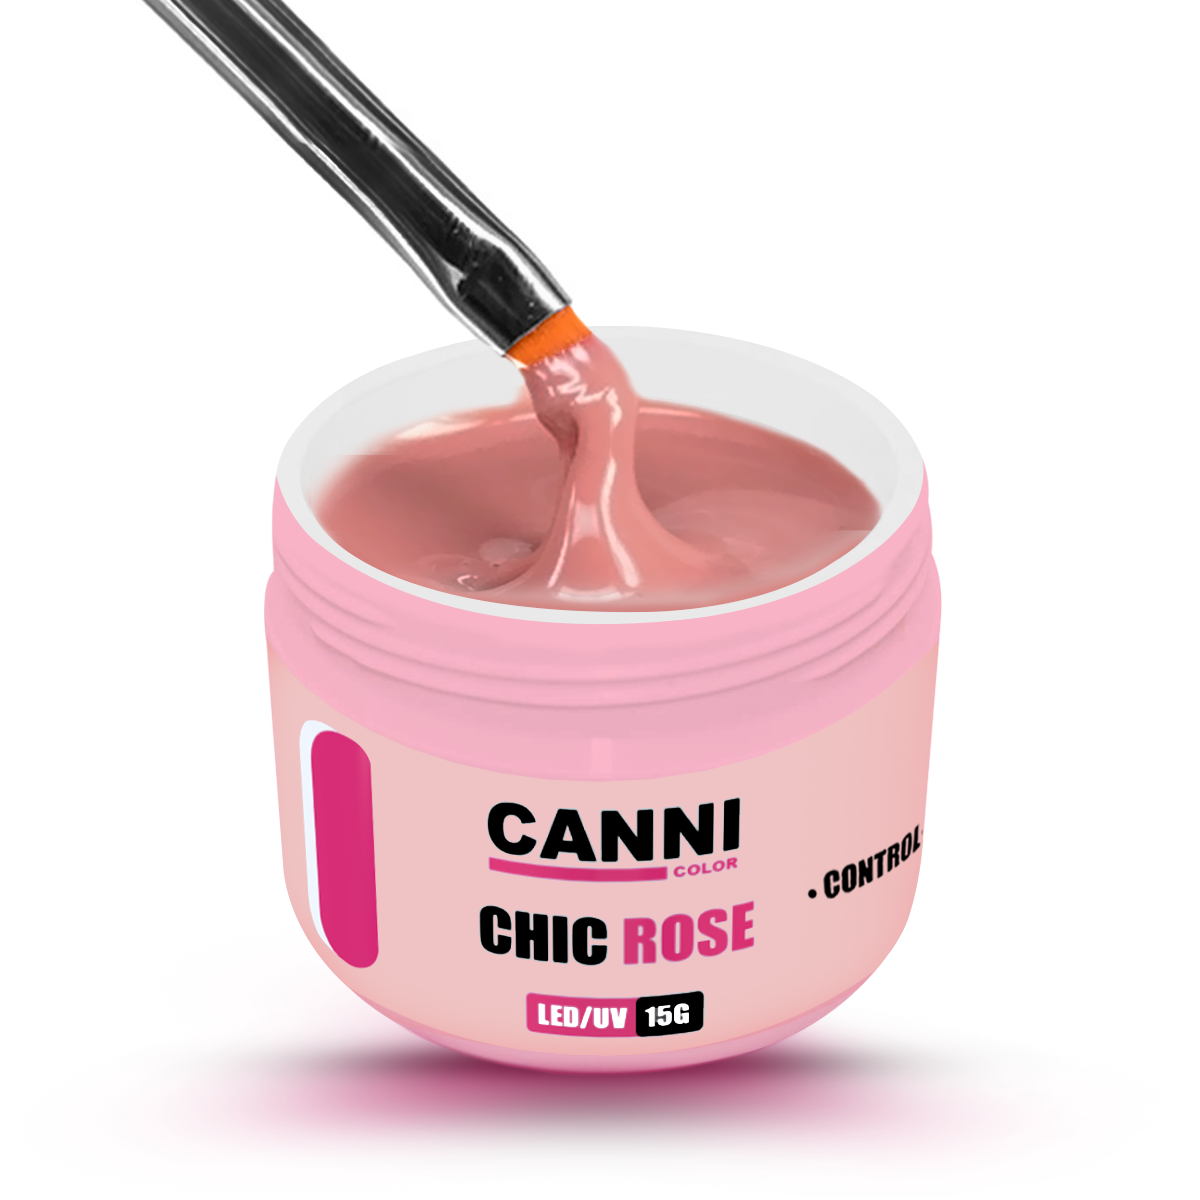 Gel Canni Color Chic Rose Control 15g - @bellario_RJ